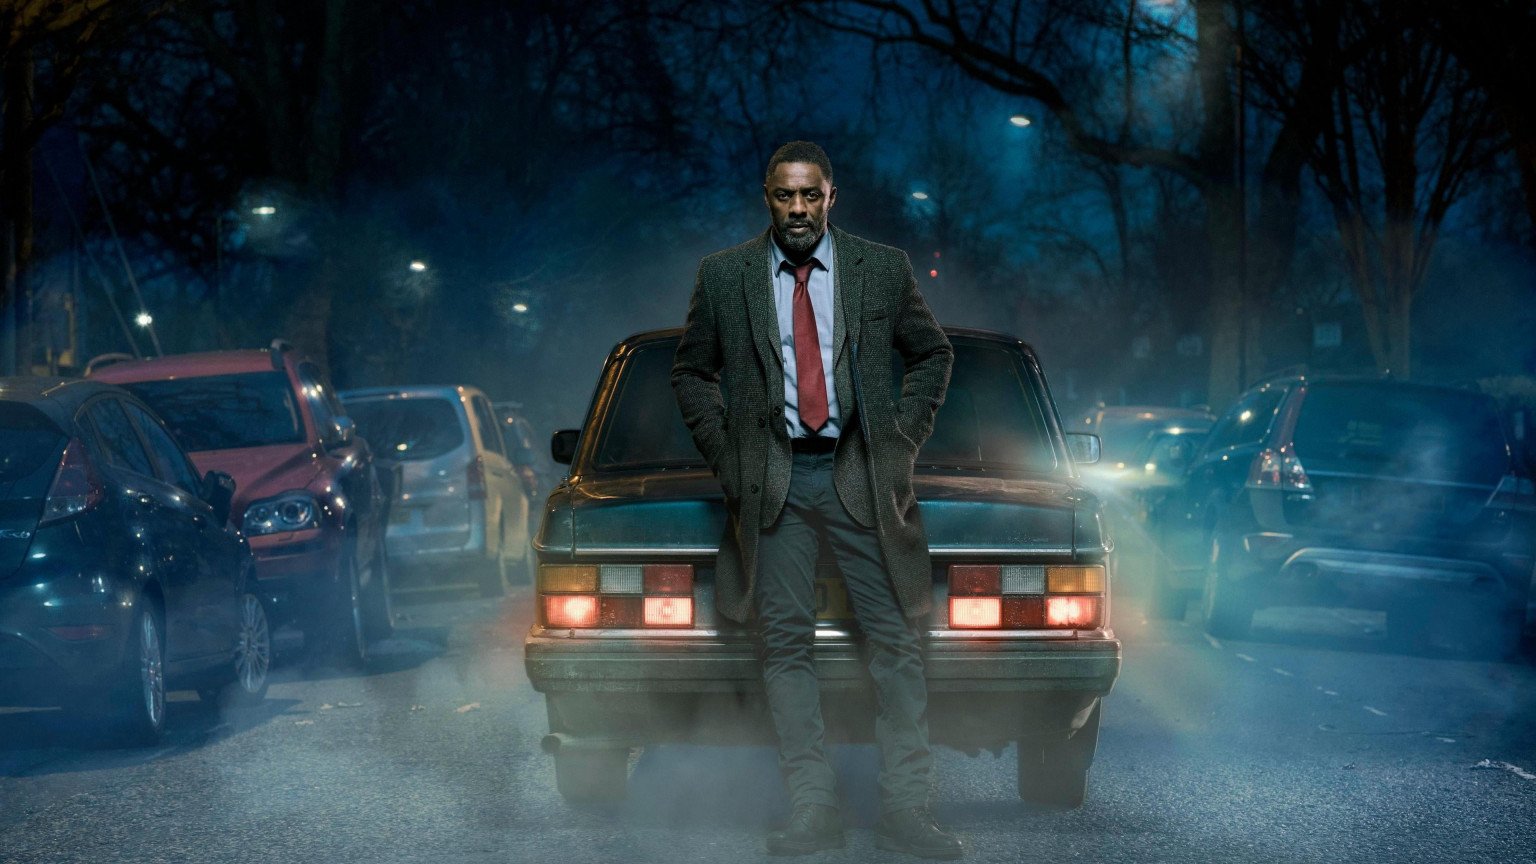 Vervolg 'Luther' wordt waarschijnlijk een film volgens Idris Elba